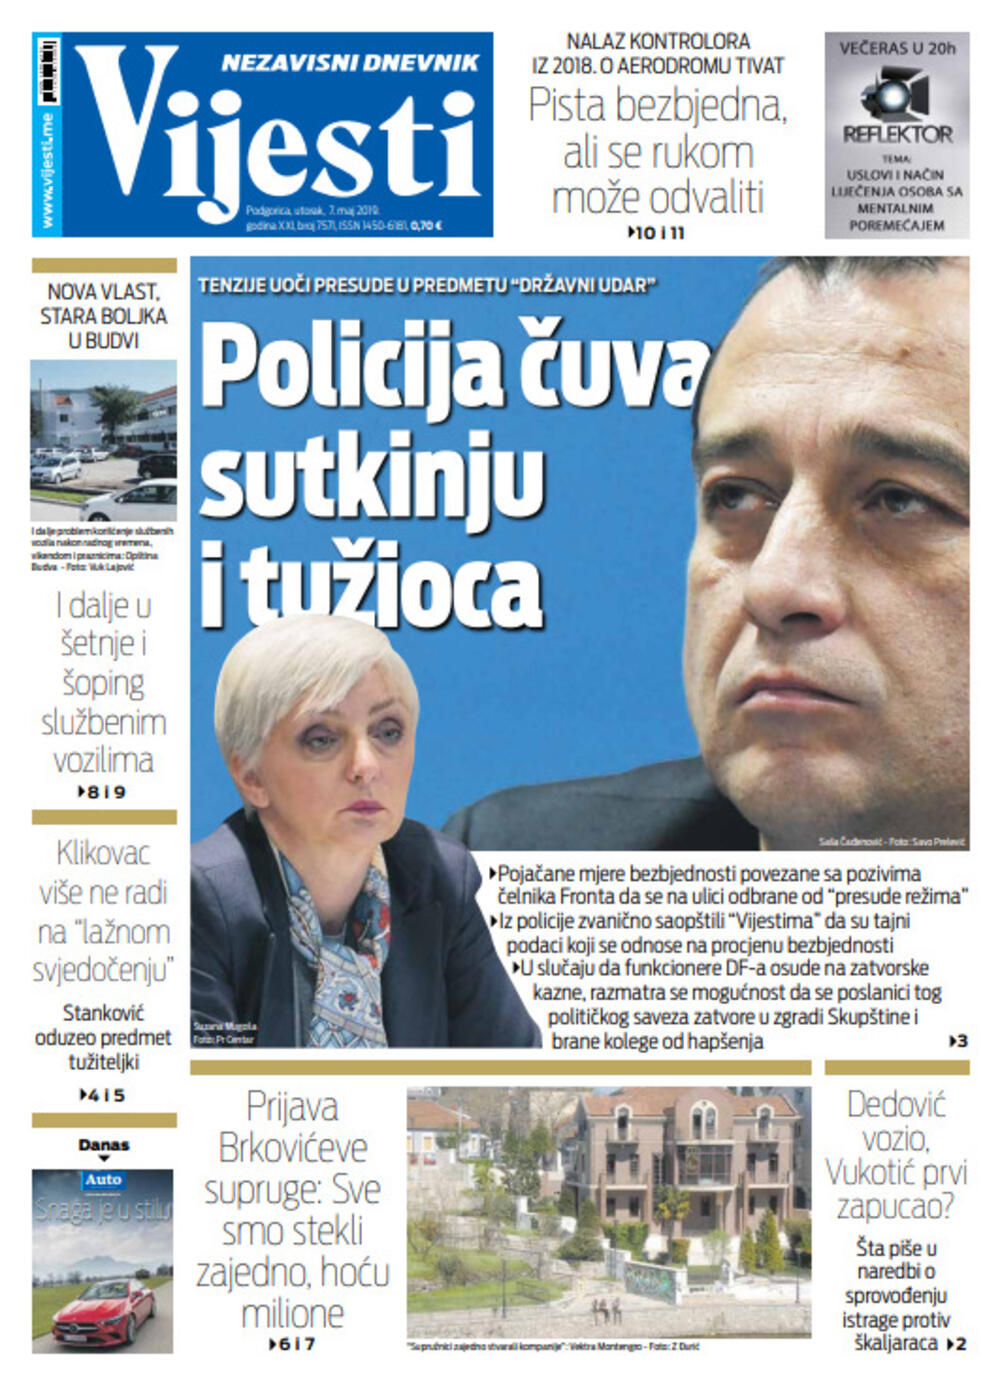 Naslovna strana "Vijesti" za sedmi maj, Foto: "Vijesti"